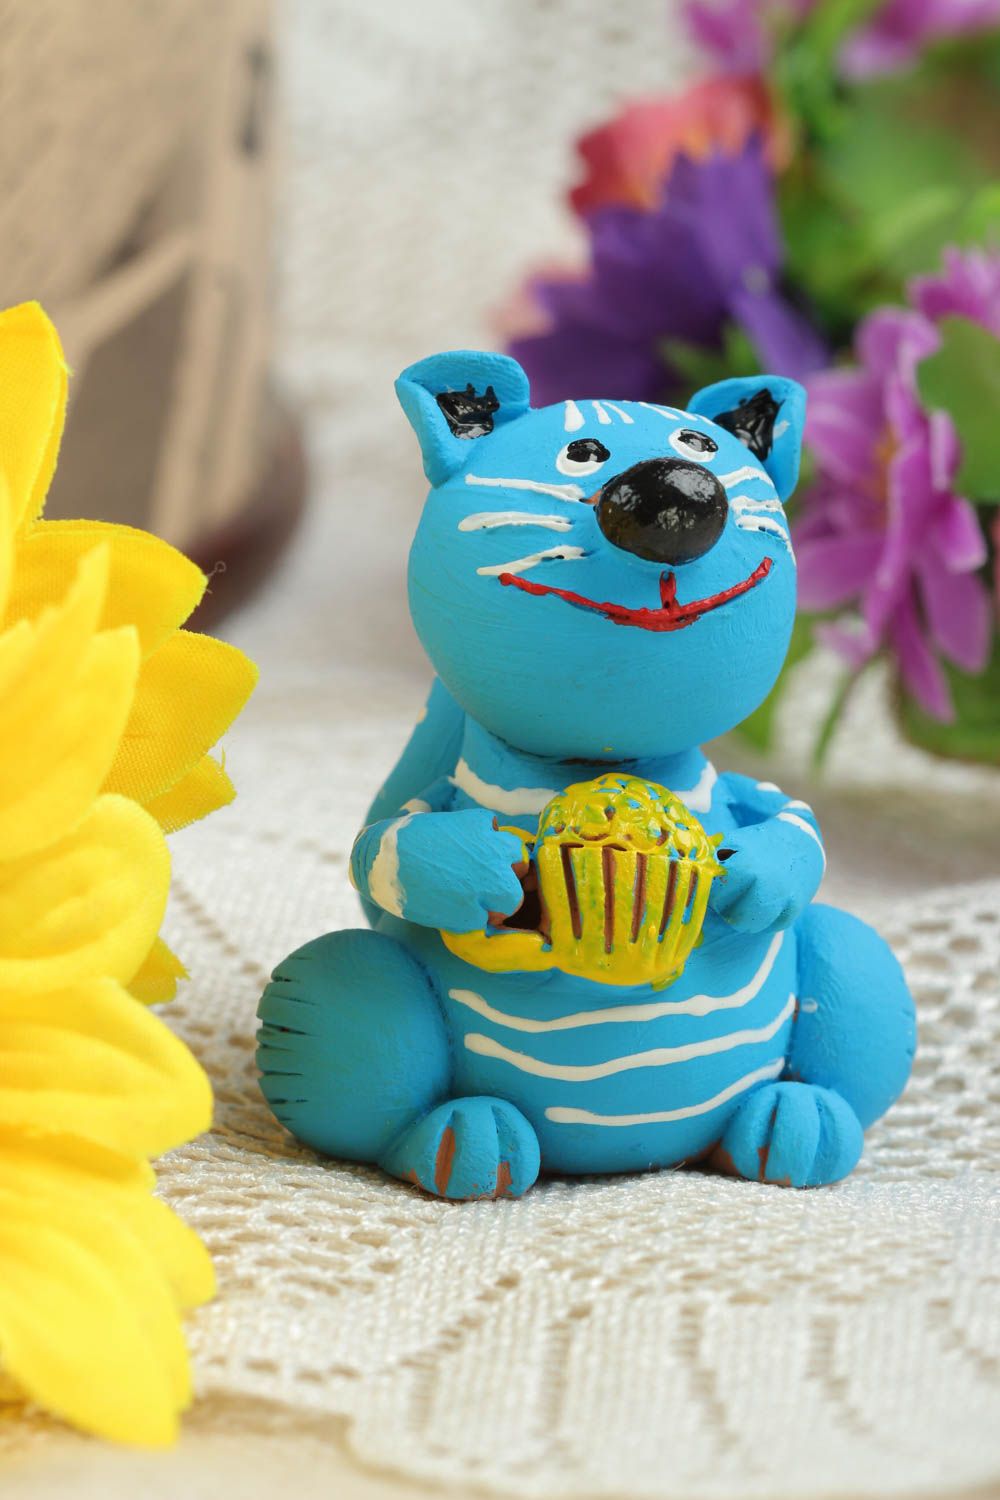 Статуэтка животного кота ручной работы статуэтка для декора фигурка из глины фото 1